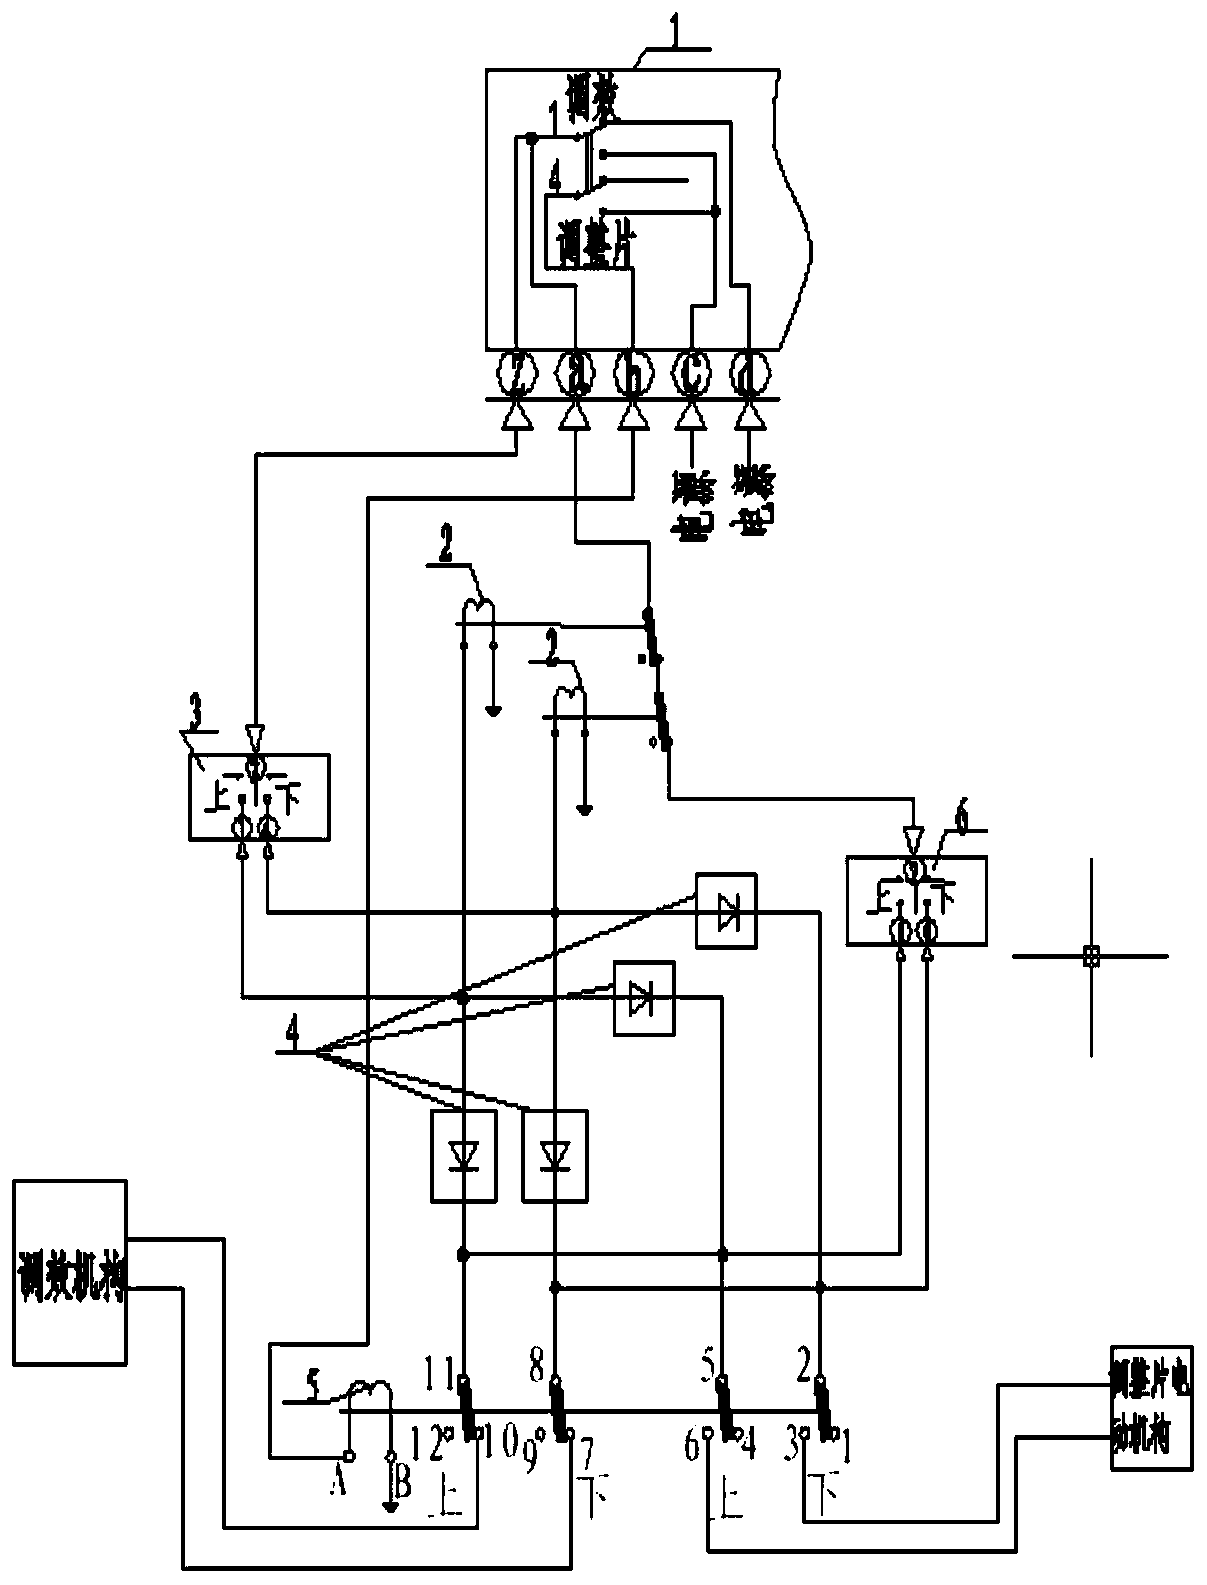 Elevator balancing control circuit of aircraft